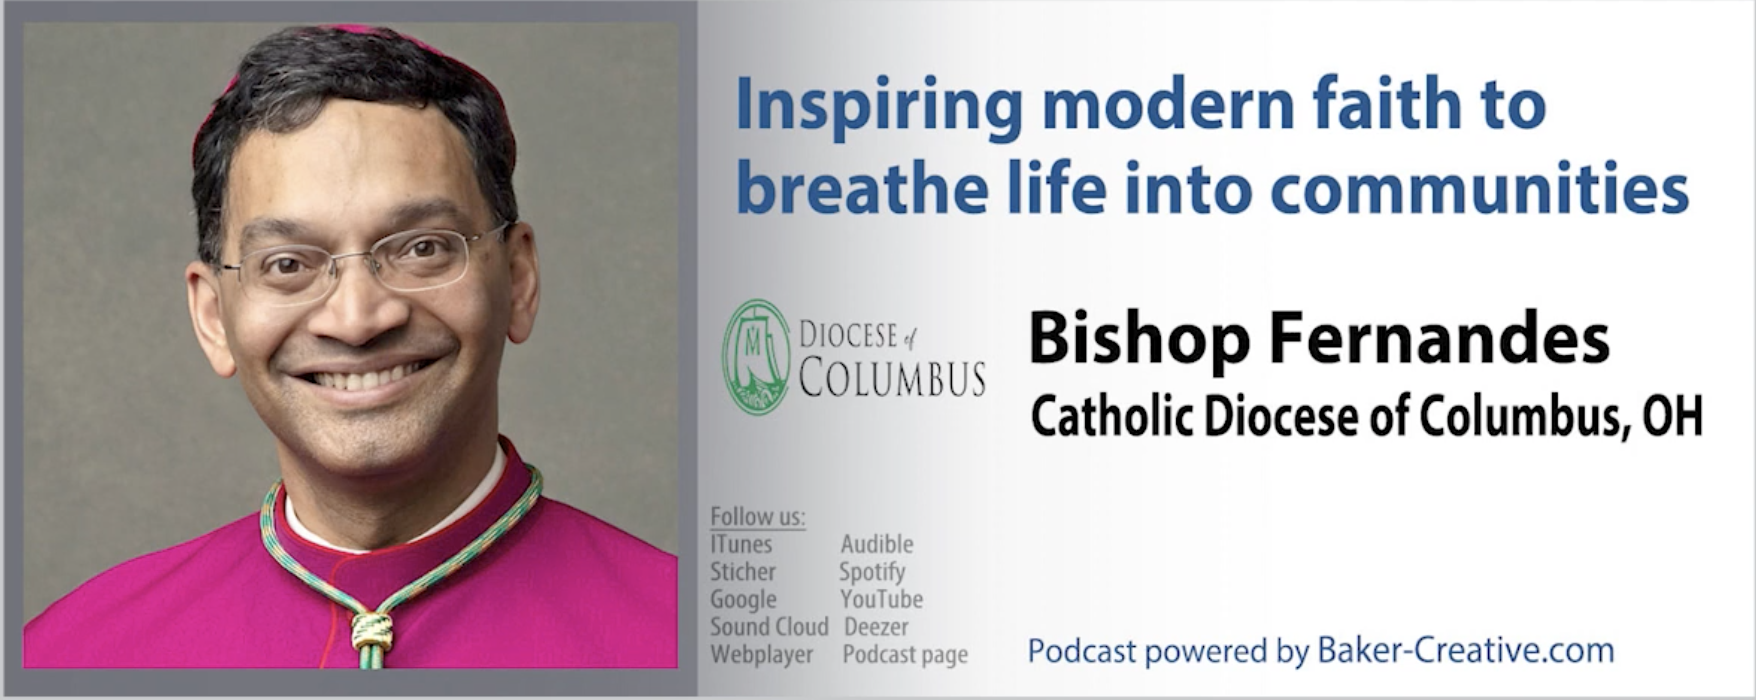 Bushuddle podcast: Bishop Fernandes Inspiring modern faith